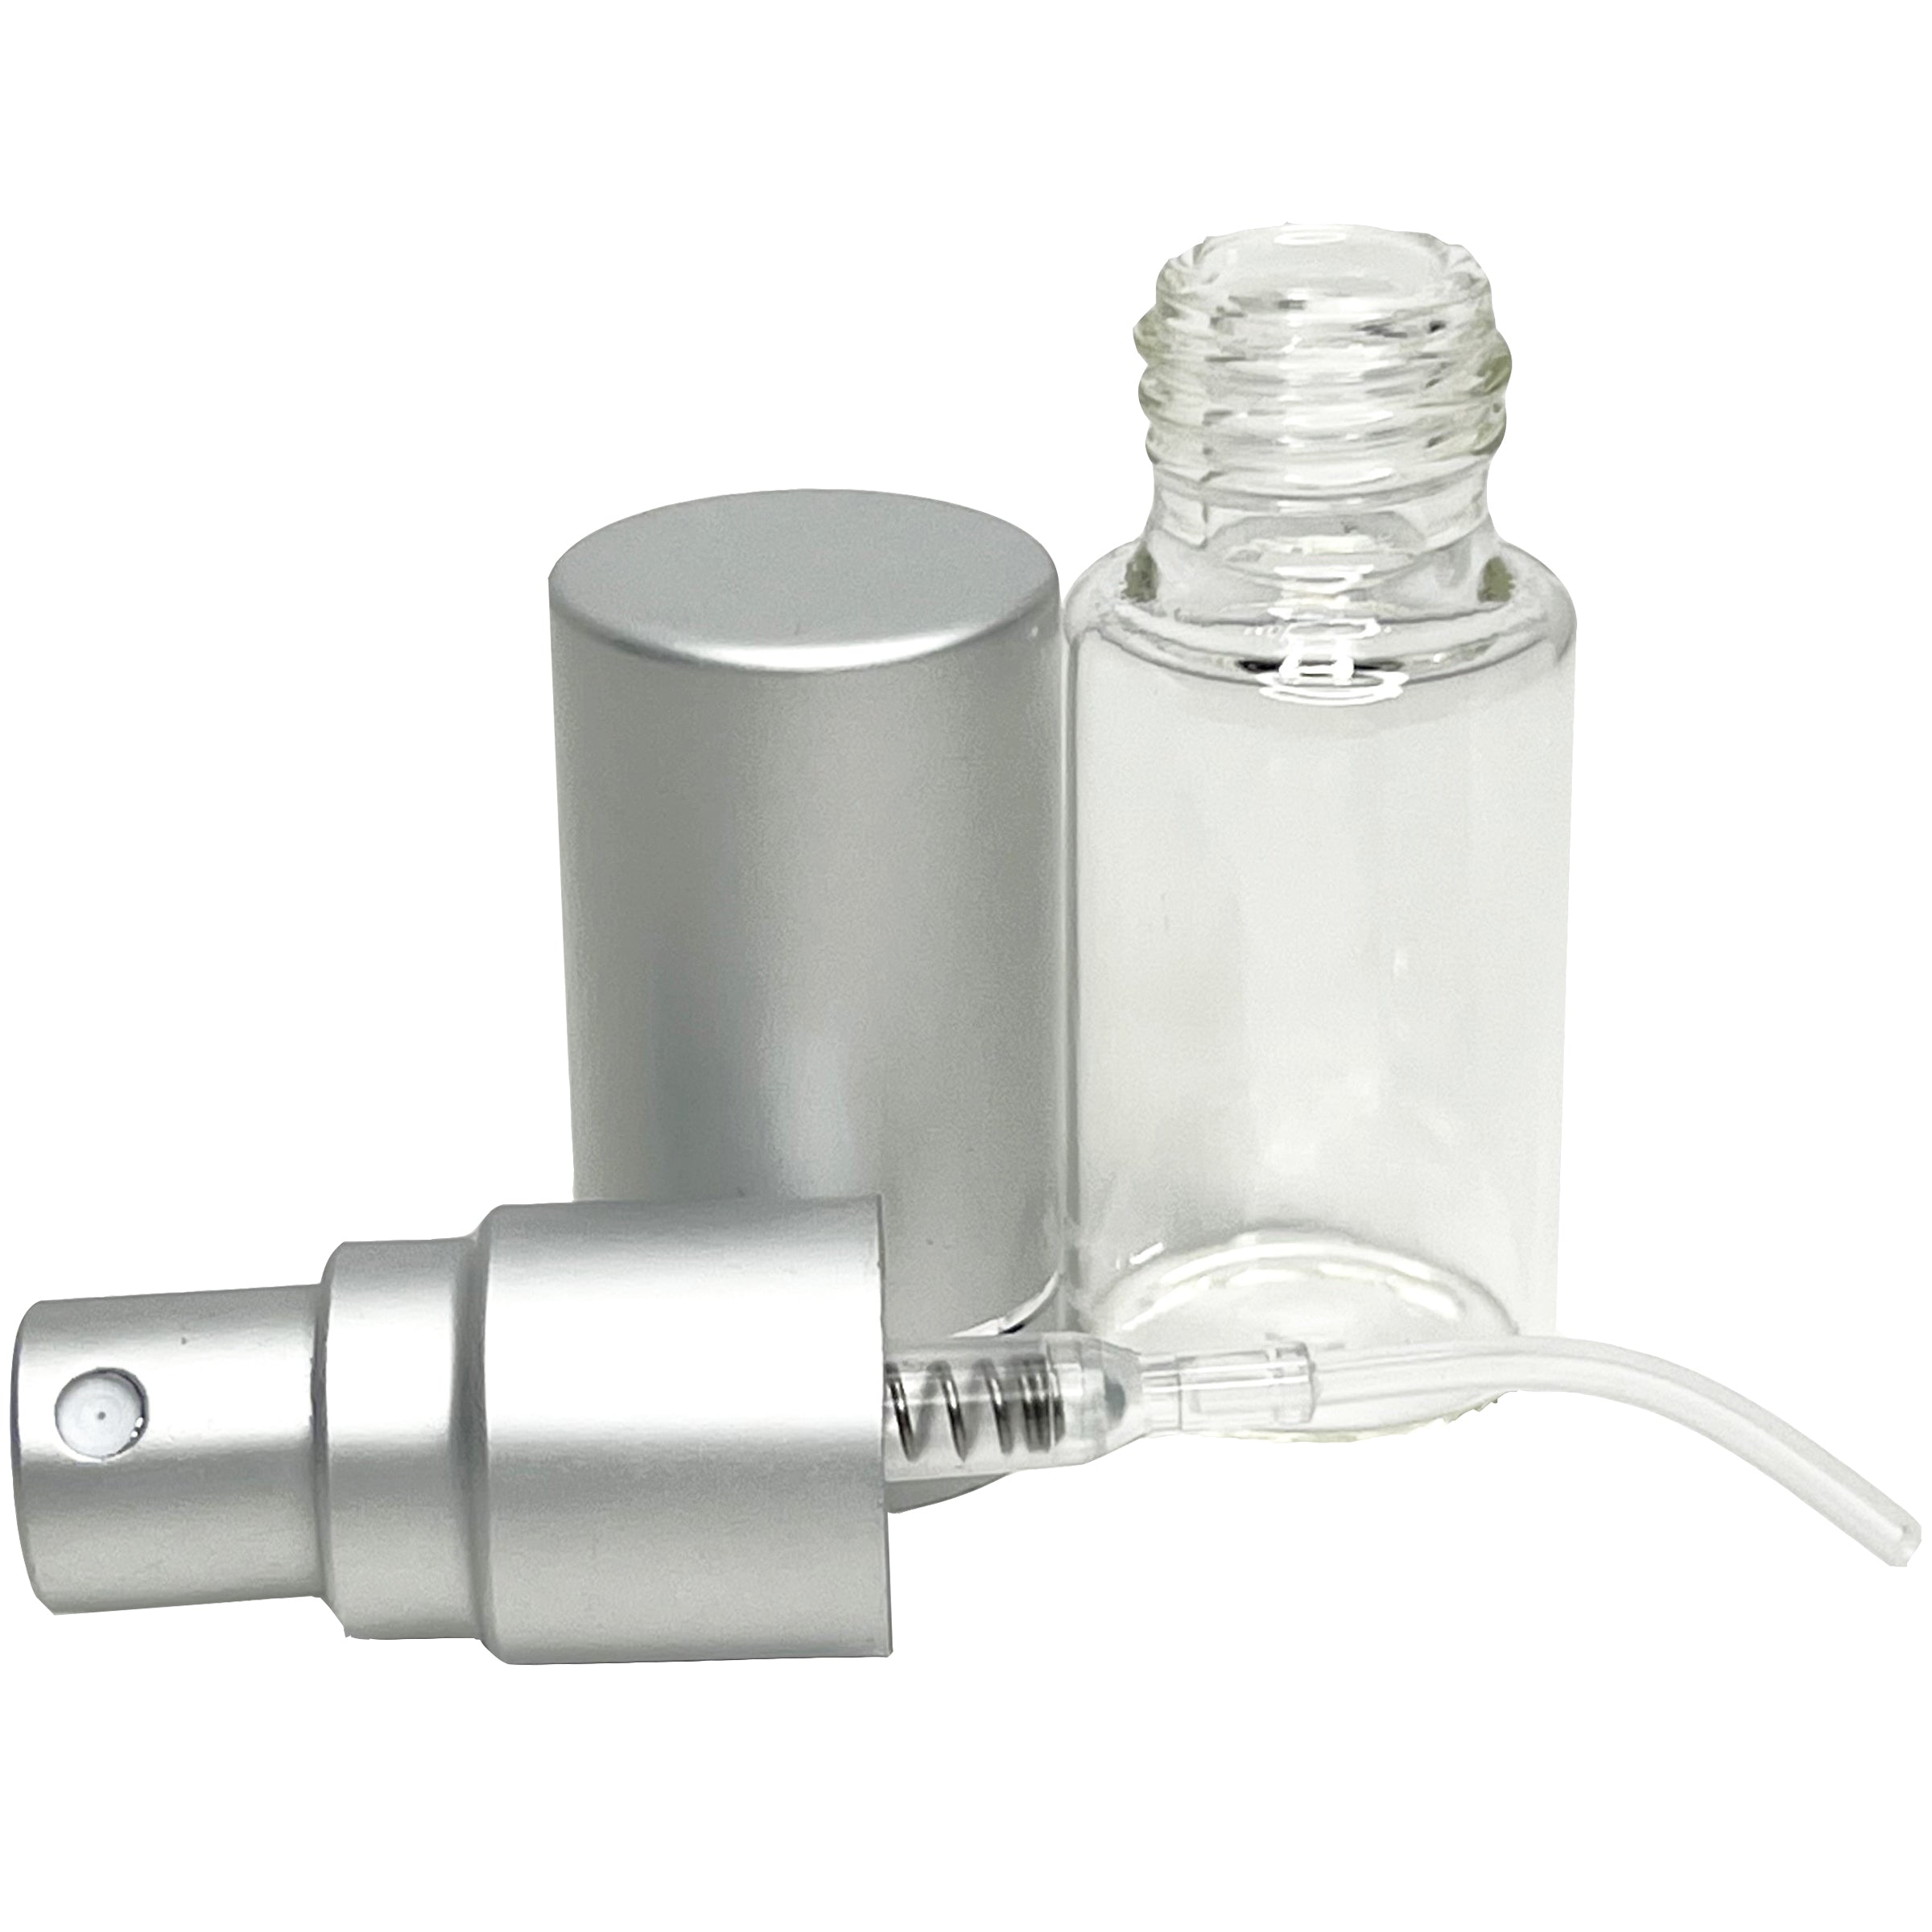 5ml 0.17oz Perfume Glass Spray Bottles Matte Silver Line Cap